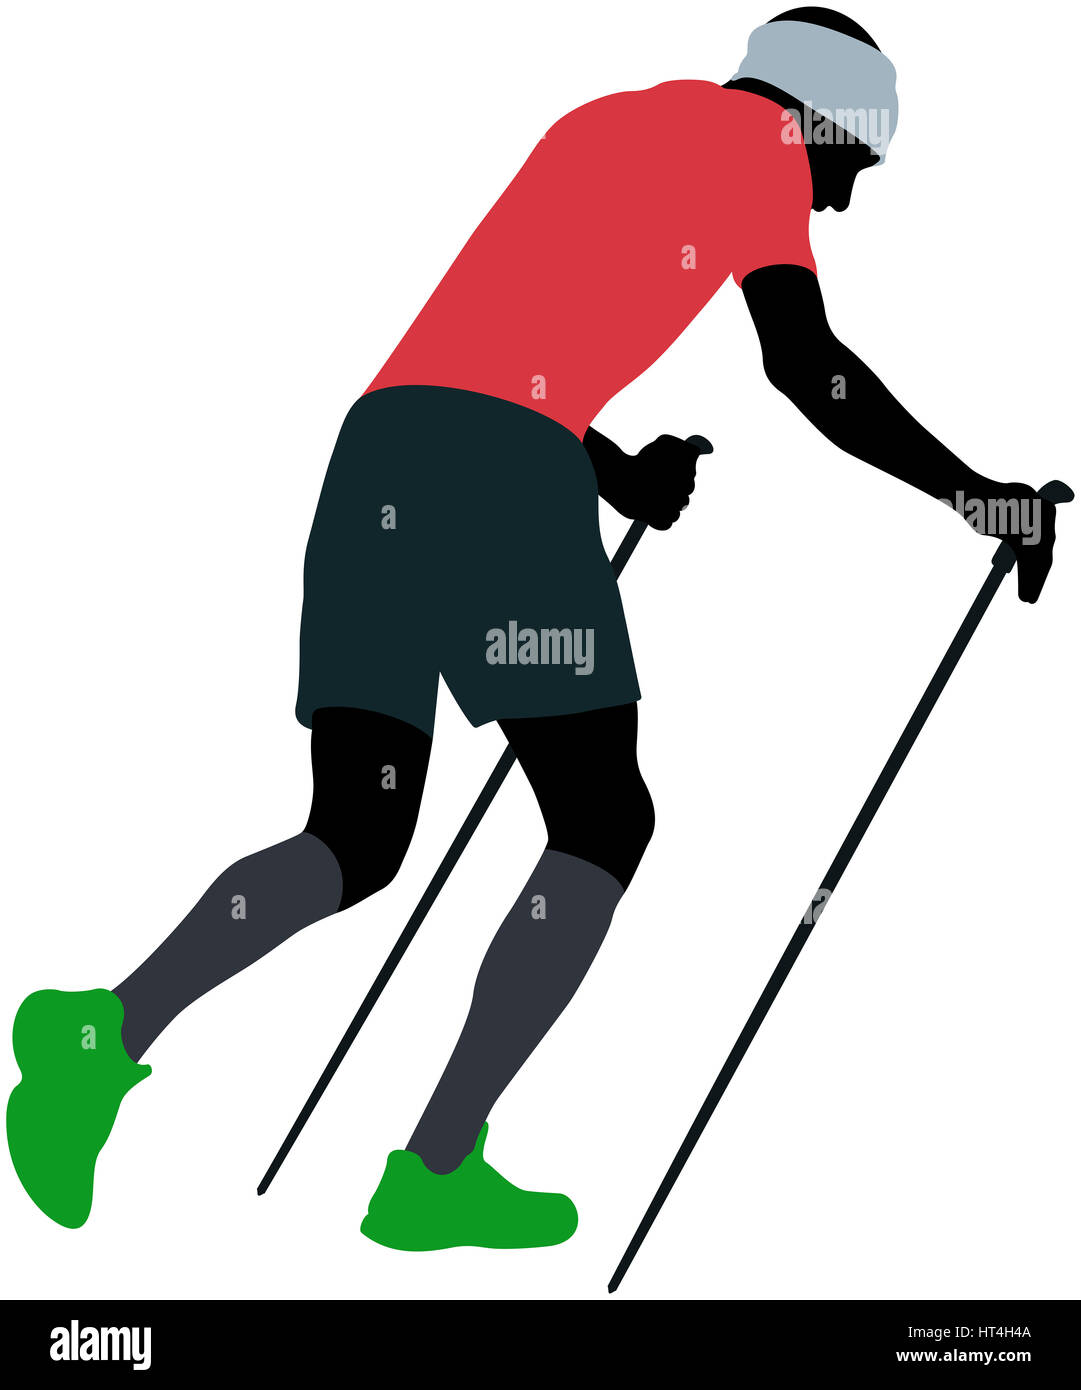 Homme coureur avec bâtons de marche en marche en montée dans des chaussettes de compression Banque D'Images